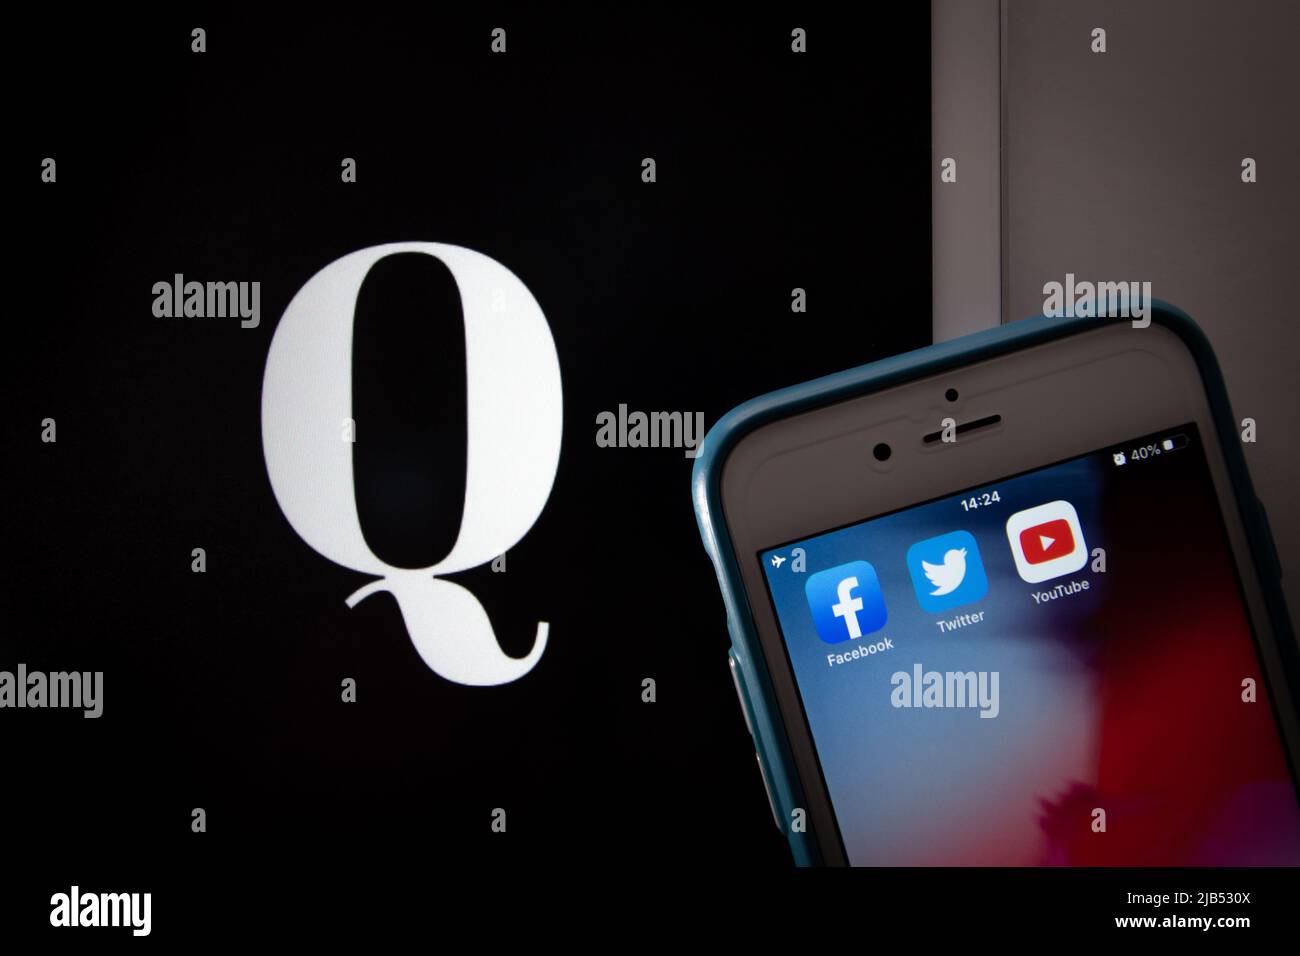 Kumamoto / JAPON - octobre 20 2020 : le logo de Qanon, un groupe de conspiration d'extrême droite, sur tablette avec Facebook, Twitter et YouTube apps sur iPhone. Banque D'Images